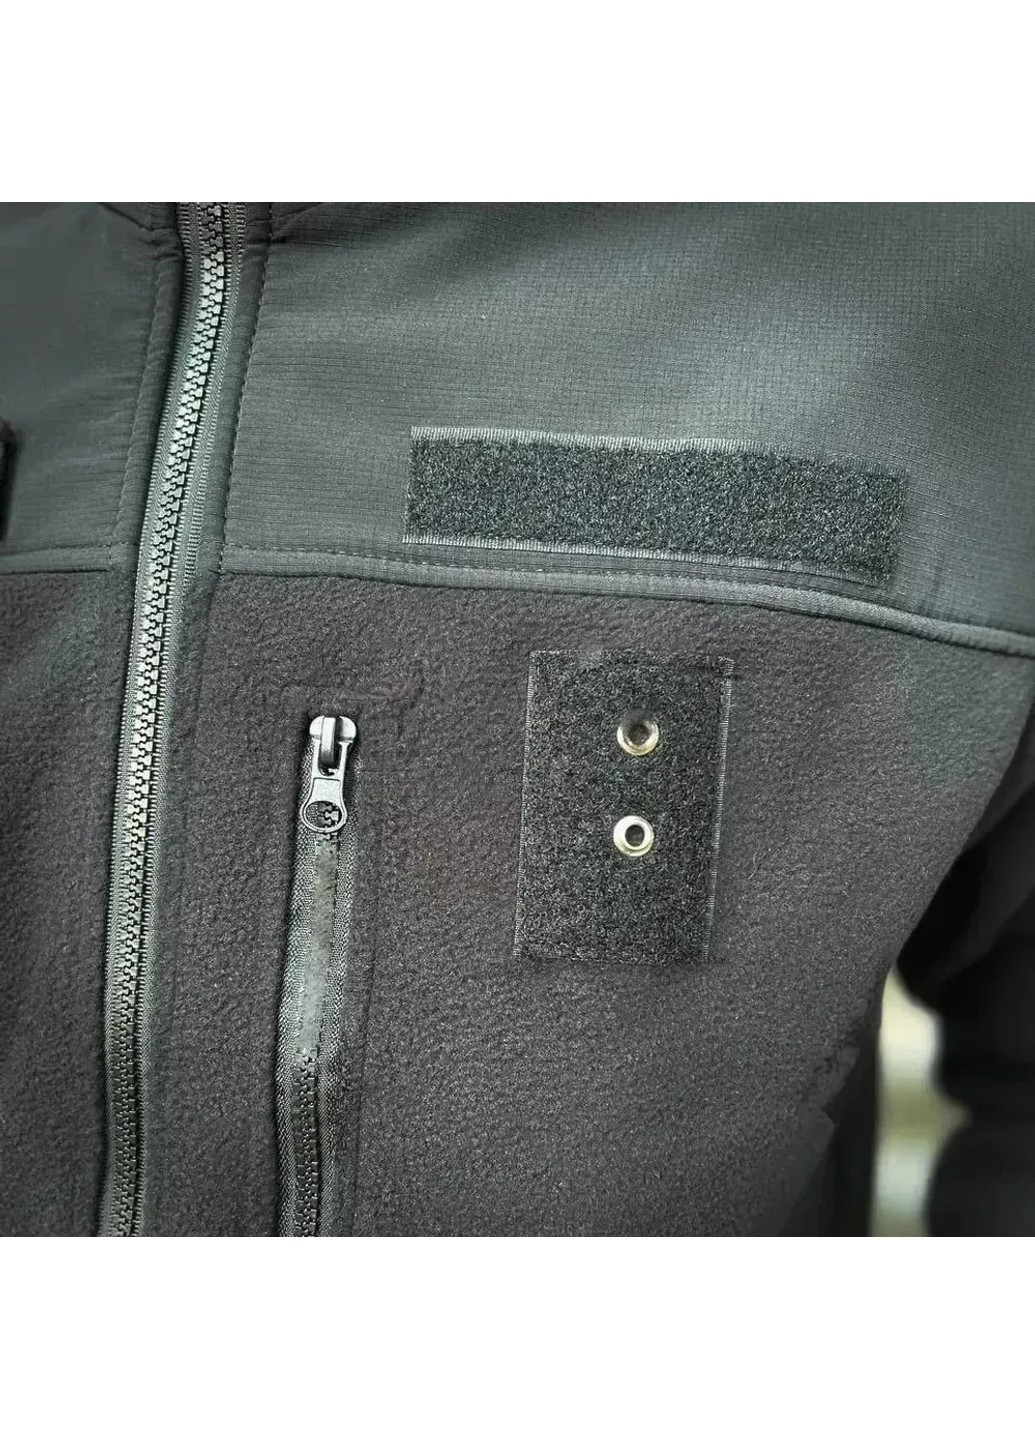 Кофта Куртка Флис для Полиции 60-62 No Brand (258187243)